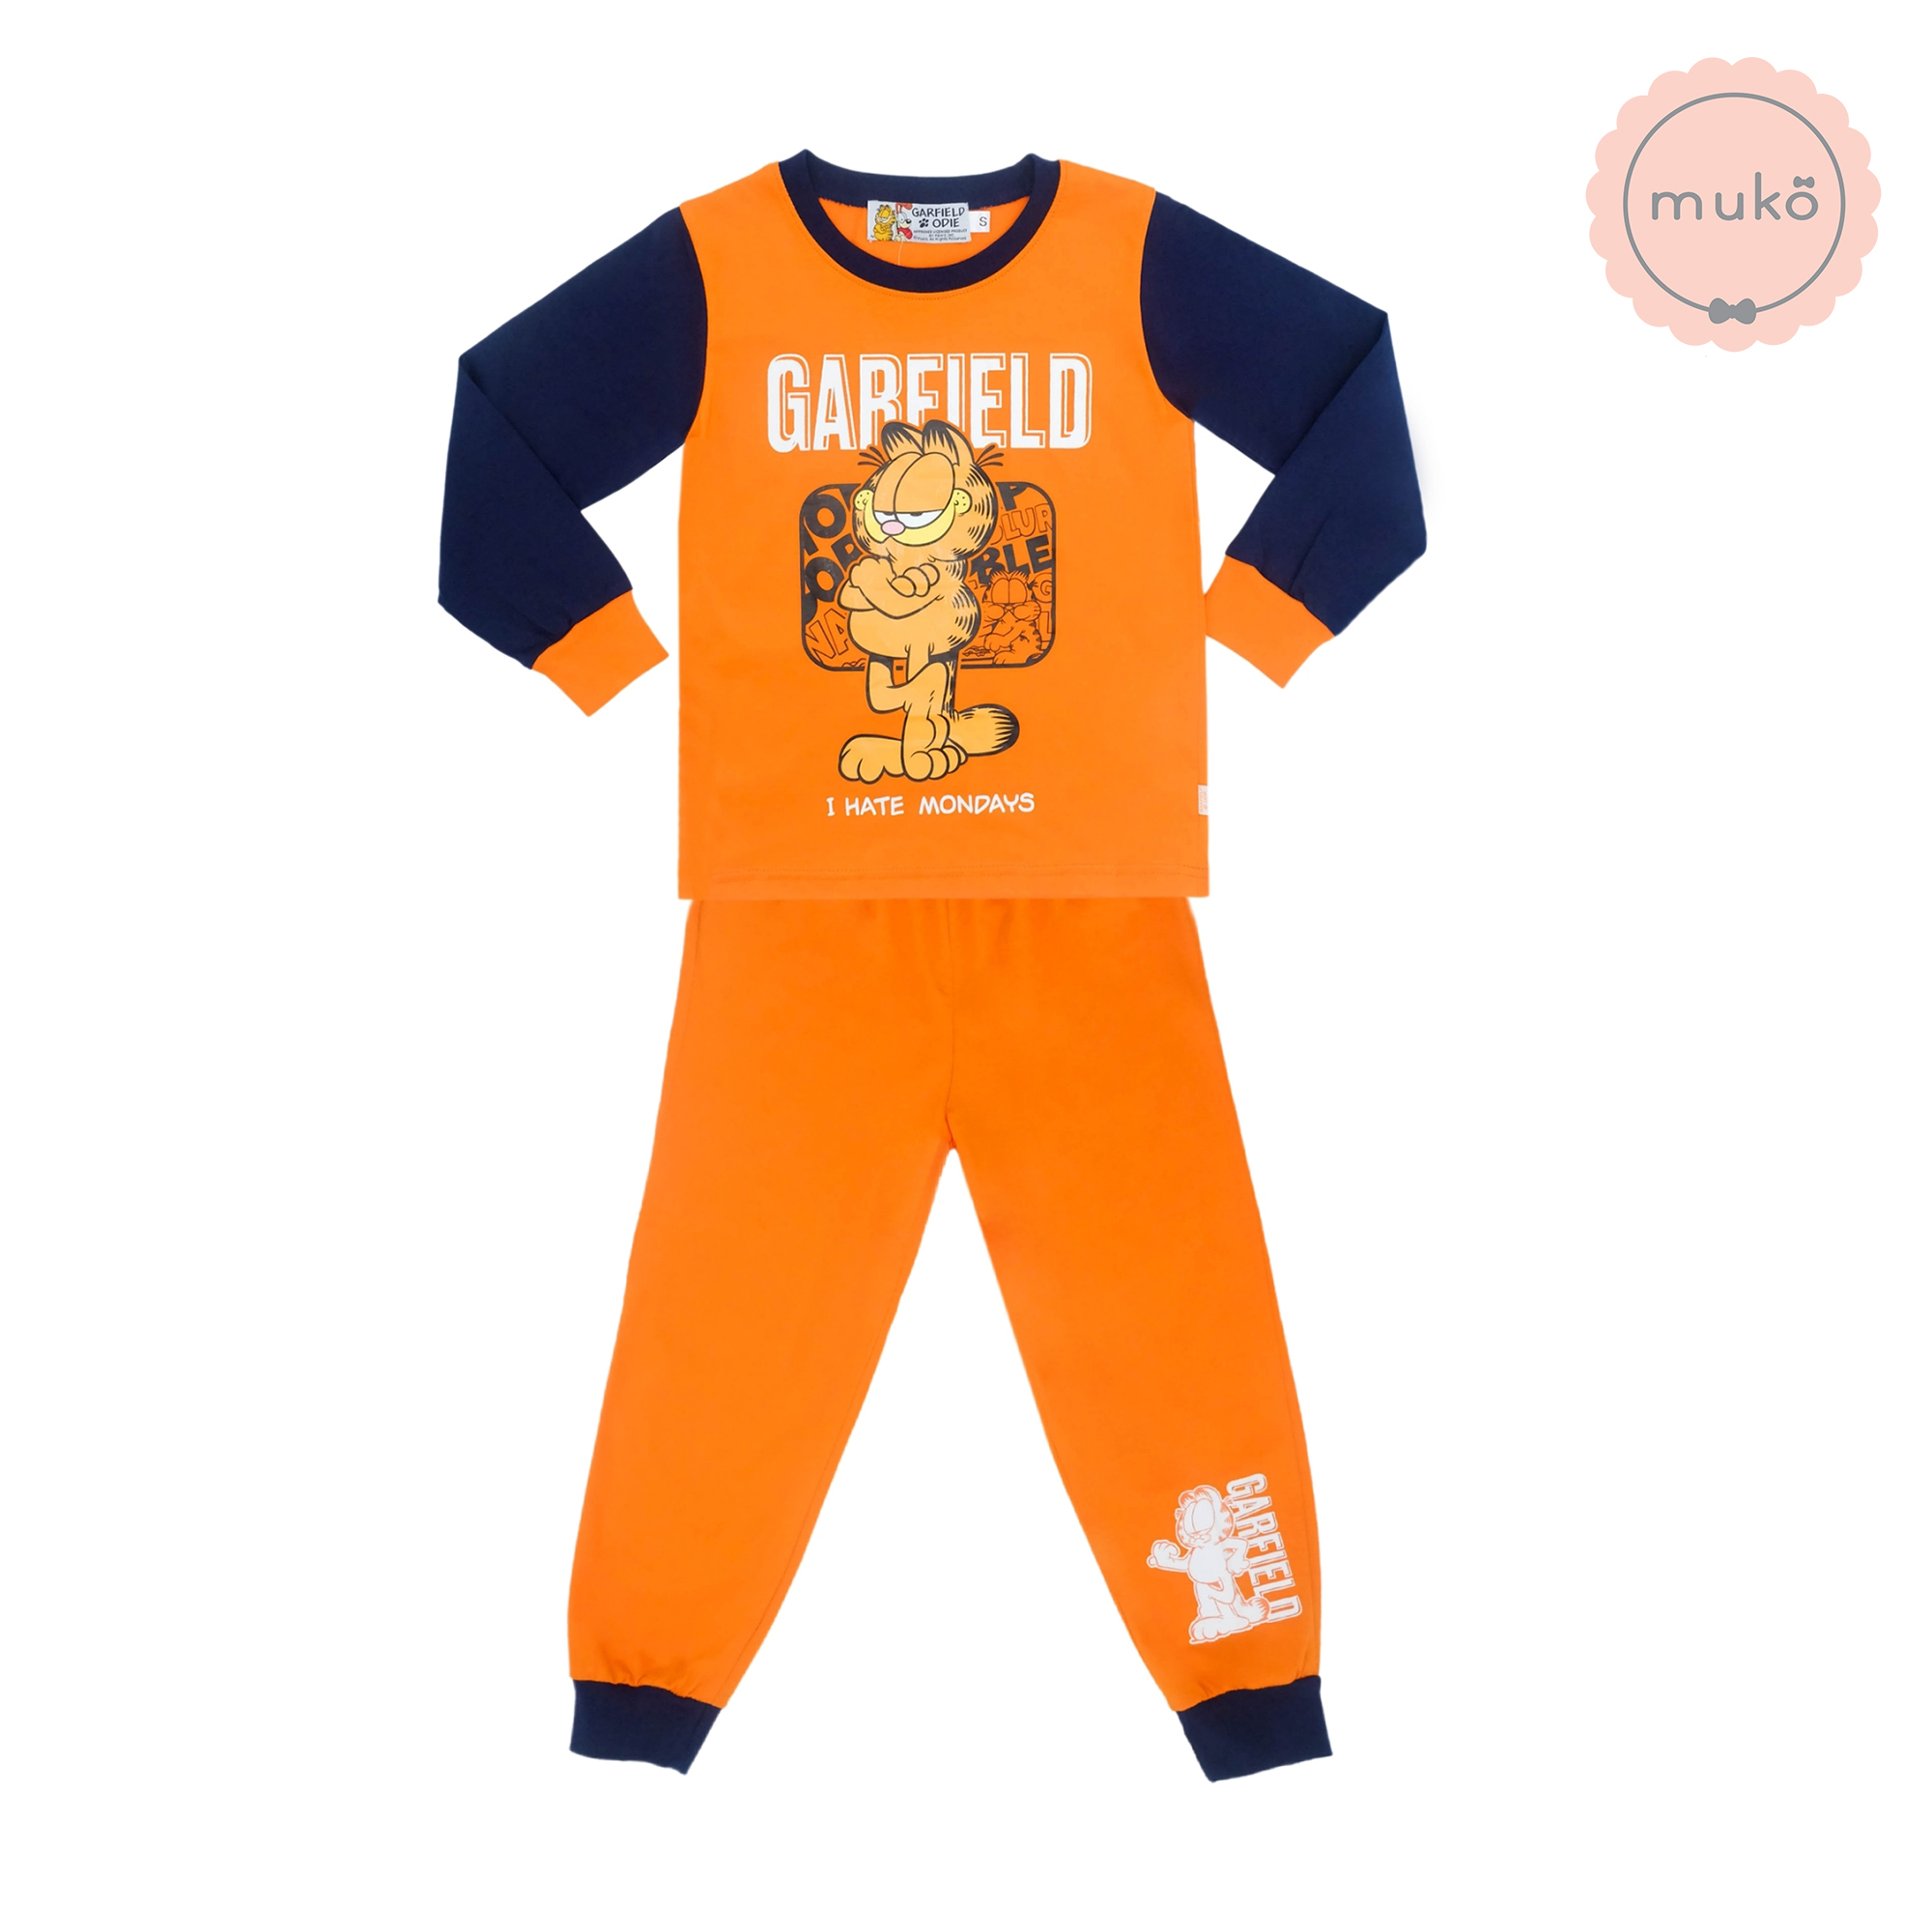 ชุดเด็ก 6-7 ขวบ แขนยาว-ขายาว (Size L) MGF127-103-XL-Orange L ลาย กาฟิวส์ Garfield สีส้ม